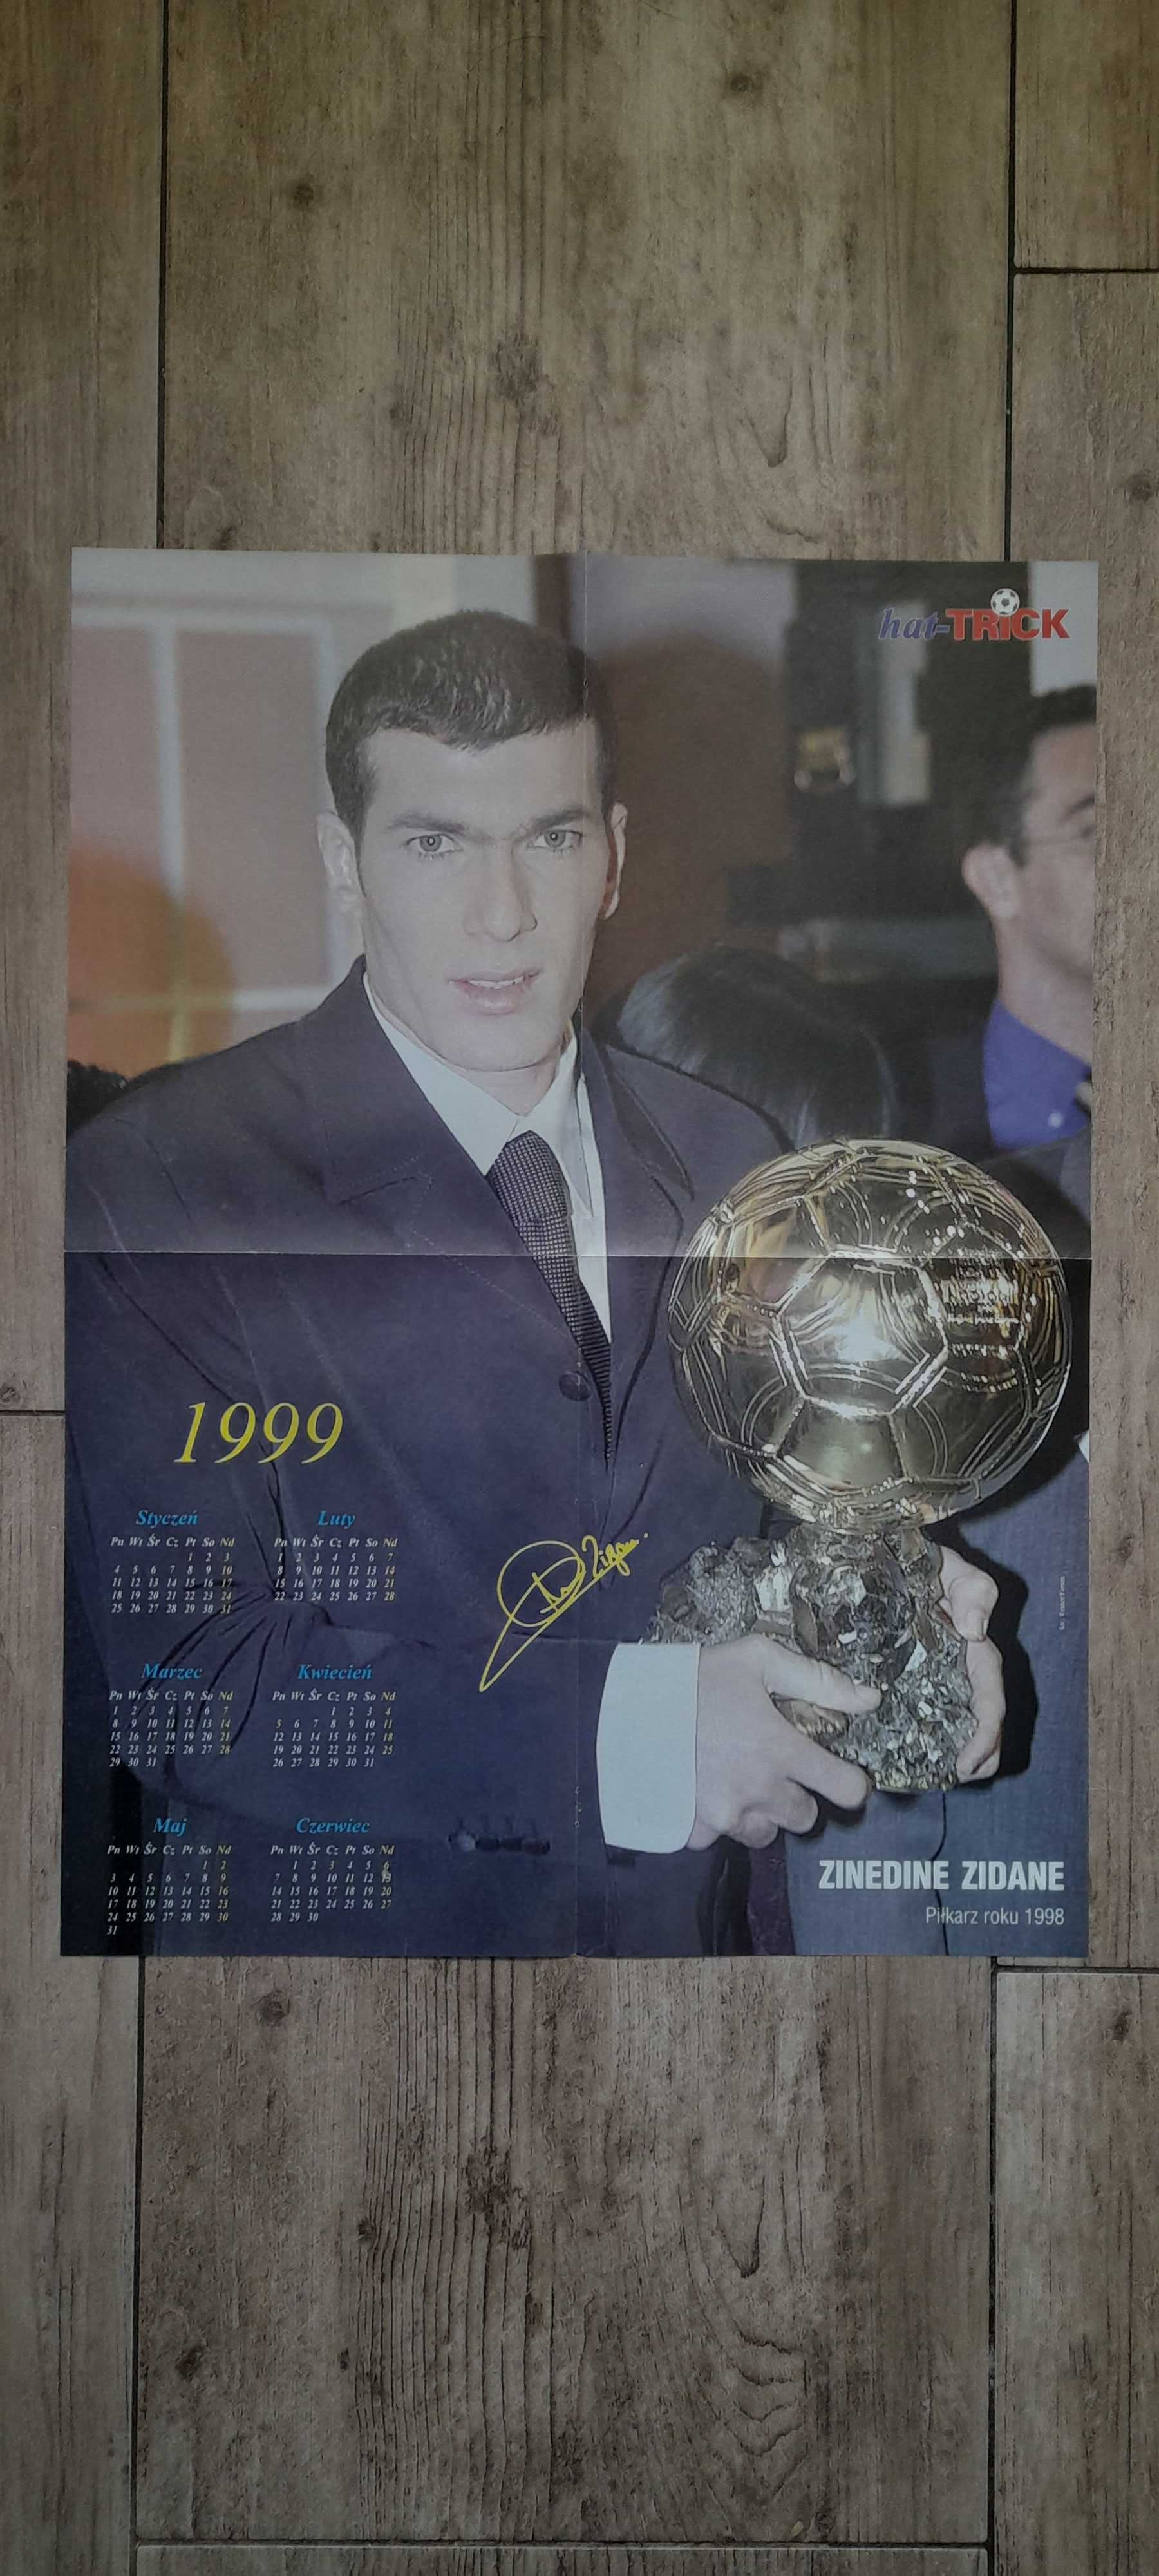 Zinadine Zidane ze Złotą Piłką/ Mirosław Trzeciak (Polska) - plakat'99